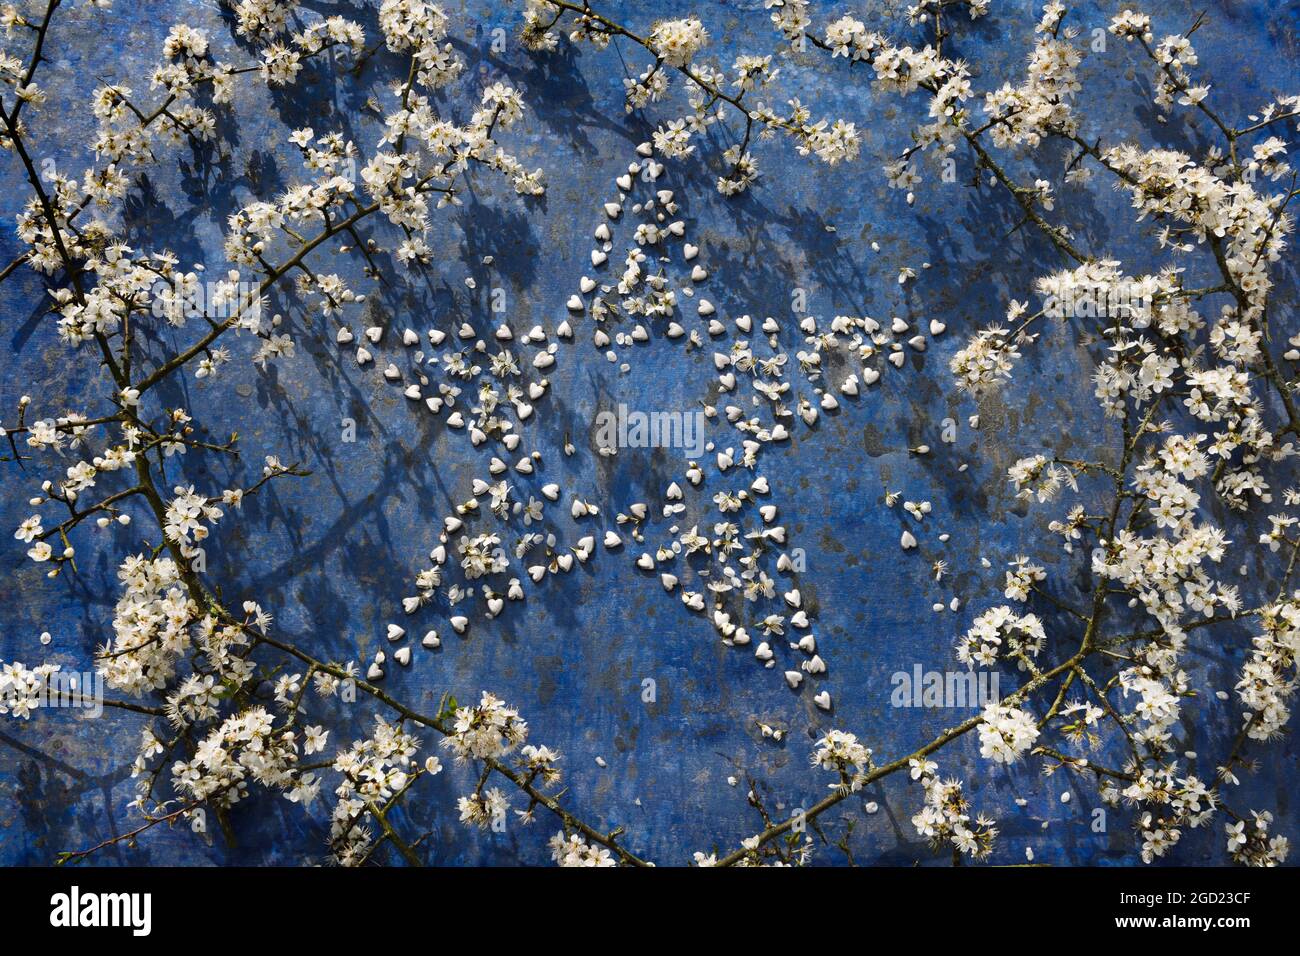 Forma de estrella hecha de pequeños corazones de plata rodeados de ramas de flor de espina negra. Foto de stock